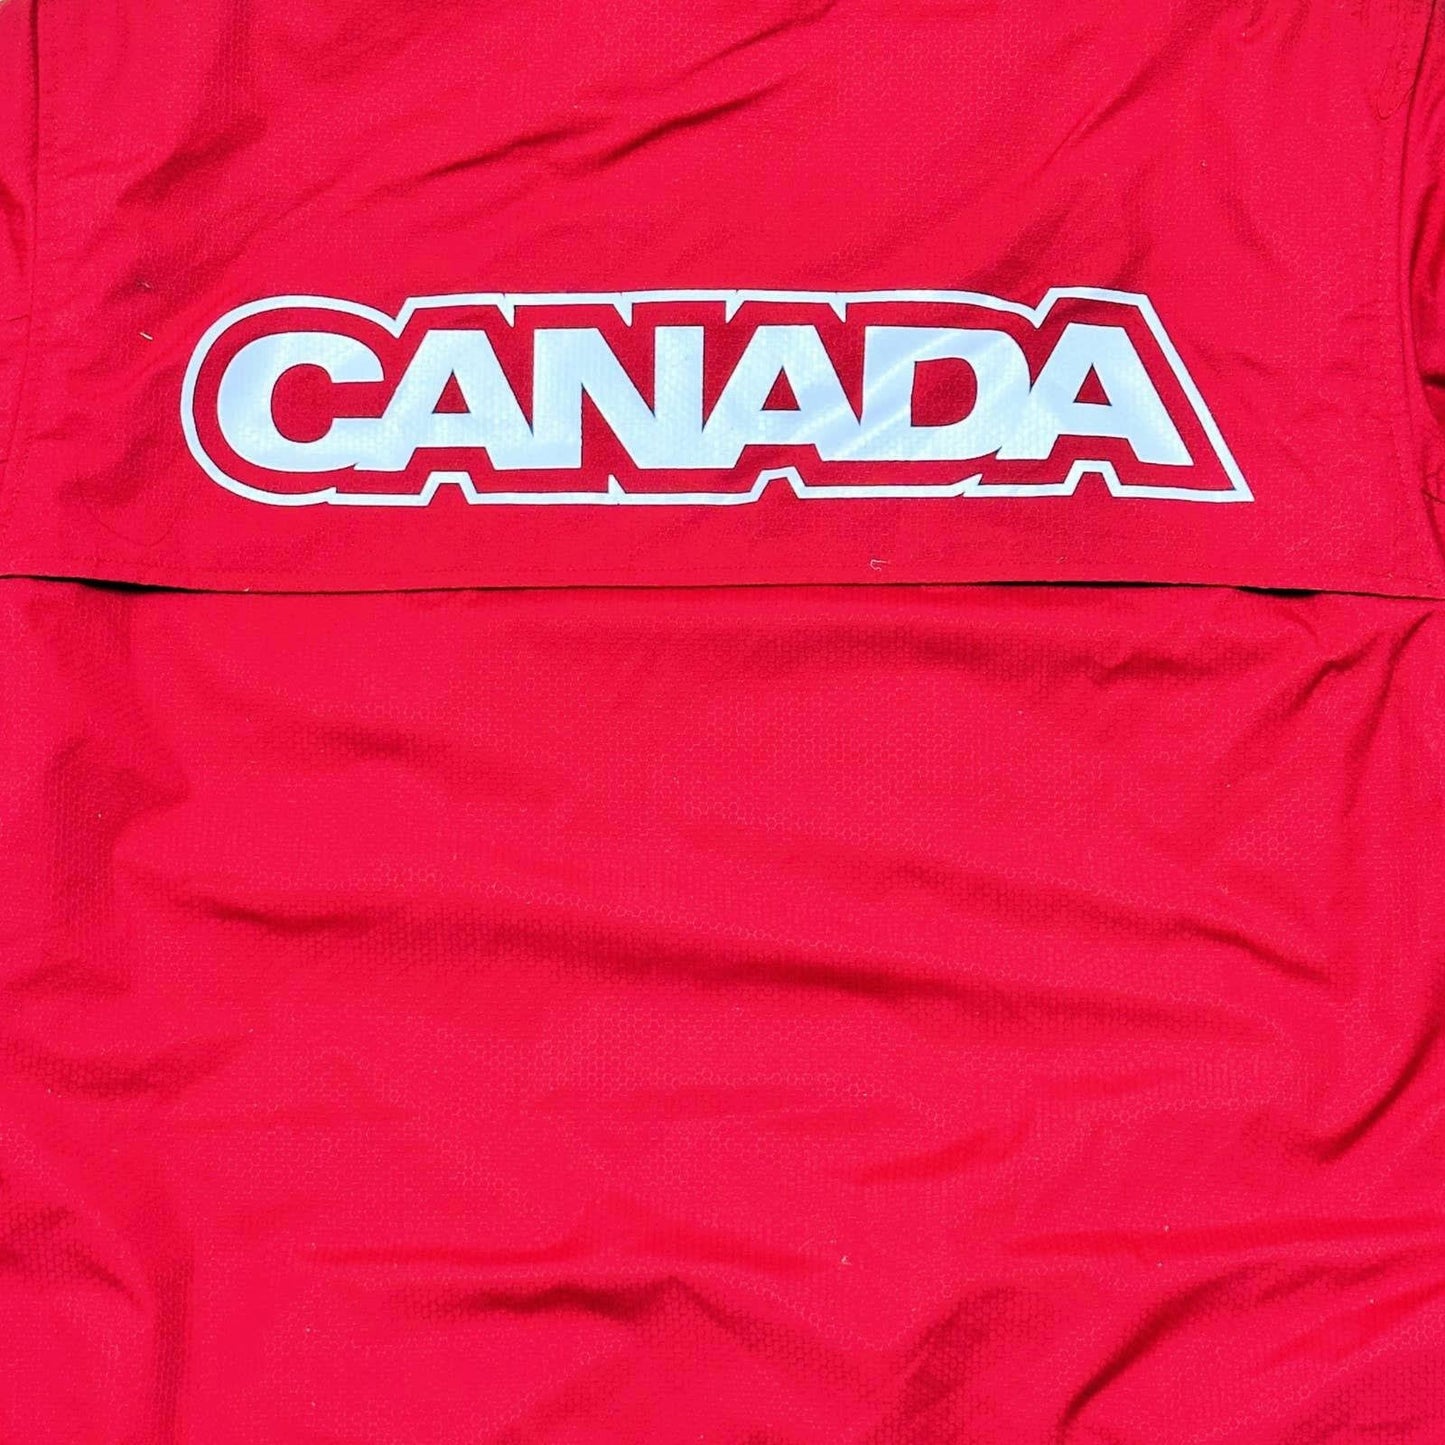 2006 Torino Olympics British Columbia Canada Place Jacket HBC LARGE NEW